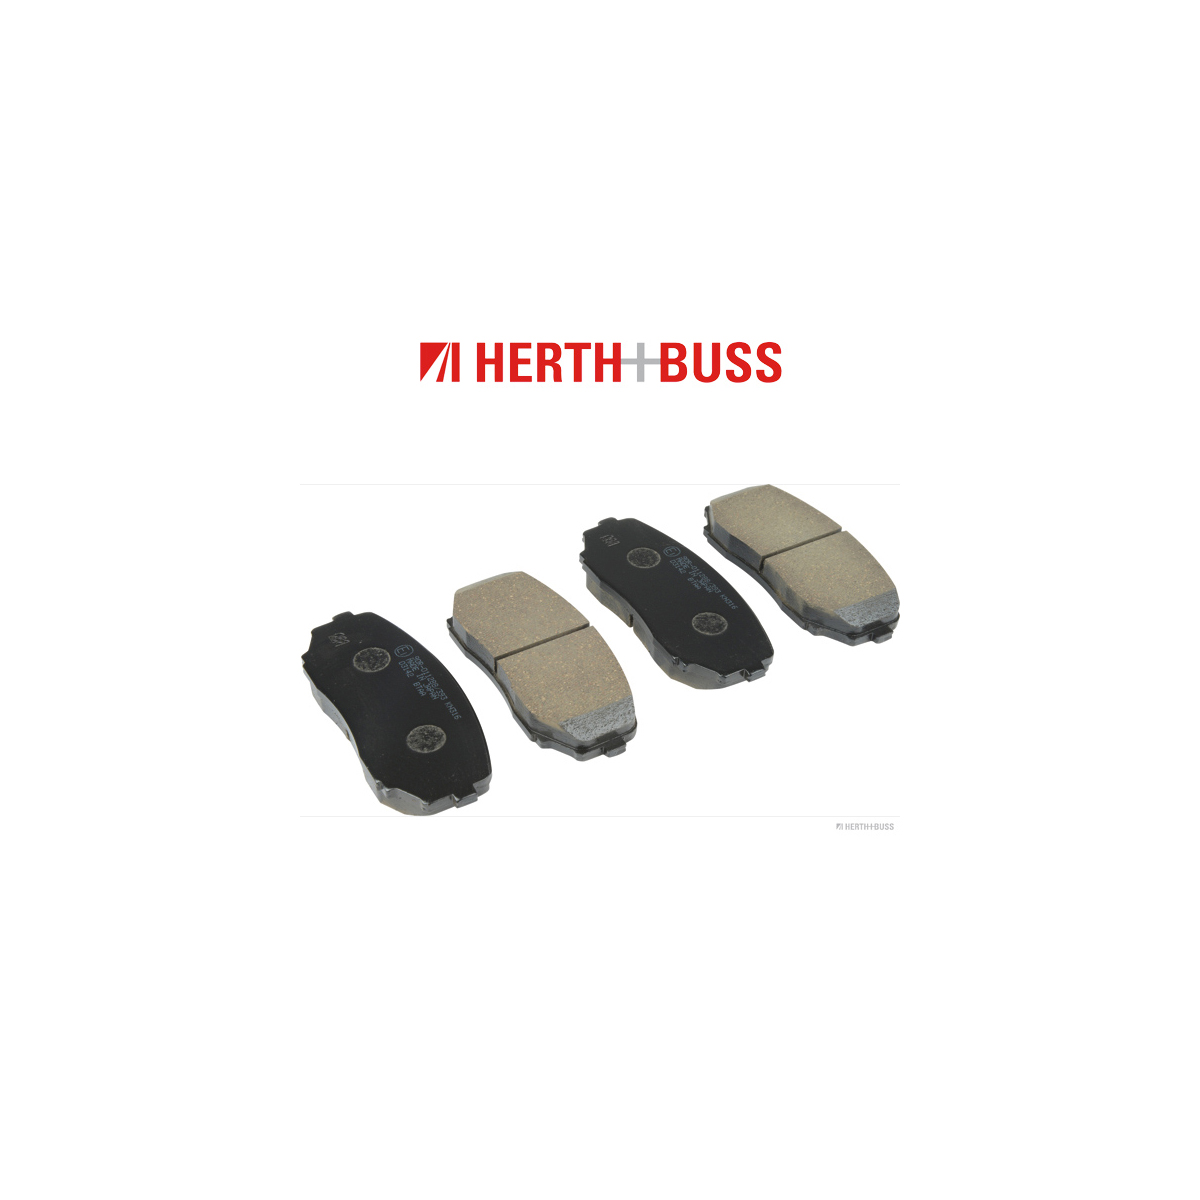 HERTH+BUSS JAKOPARTS Bremsbeläge MITSUBISHI Outlander 3 GG_W GF_W 2.4 Hybrid 4WD vorne